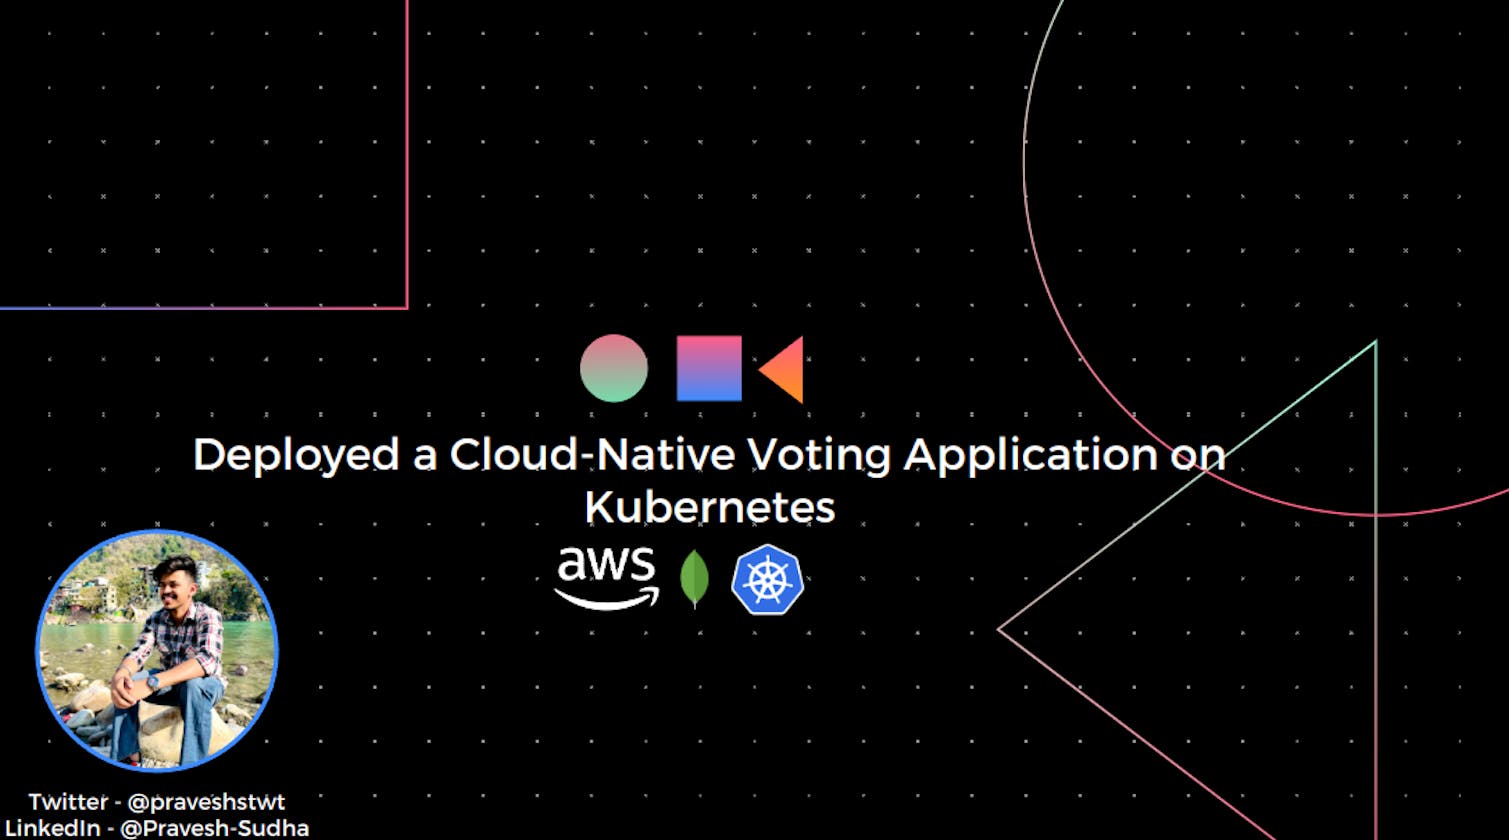 Deployed a Cloud-Native Application on Kubernetes (EKS)